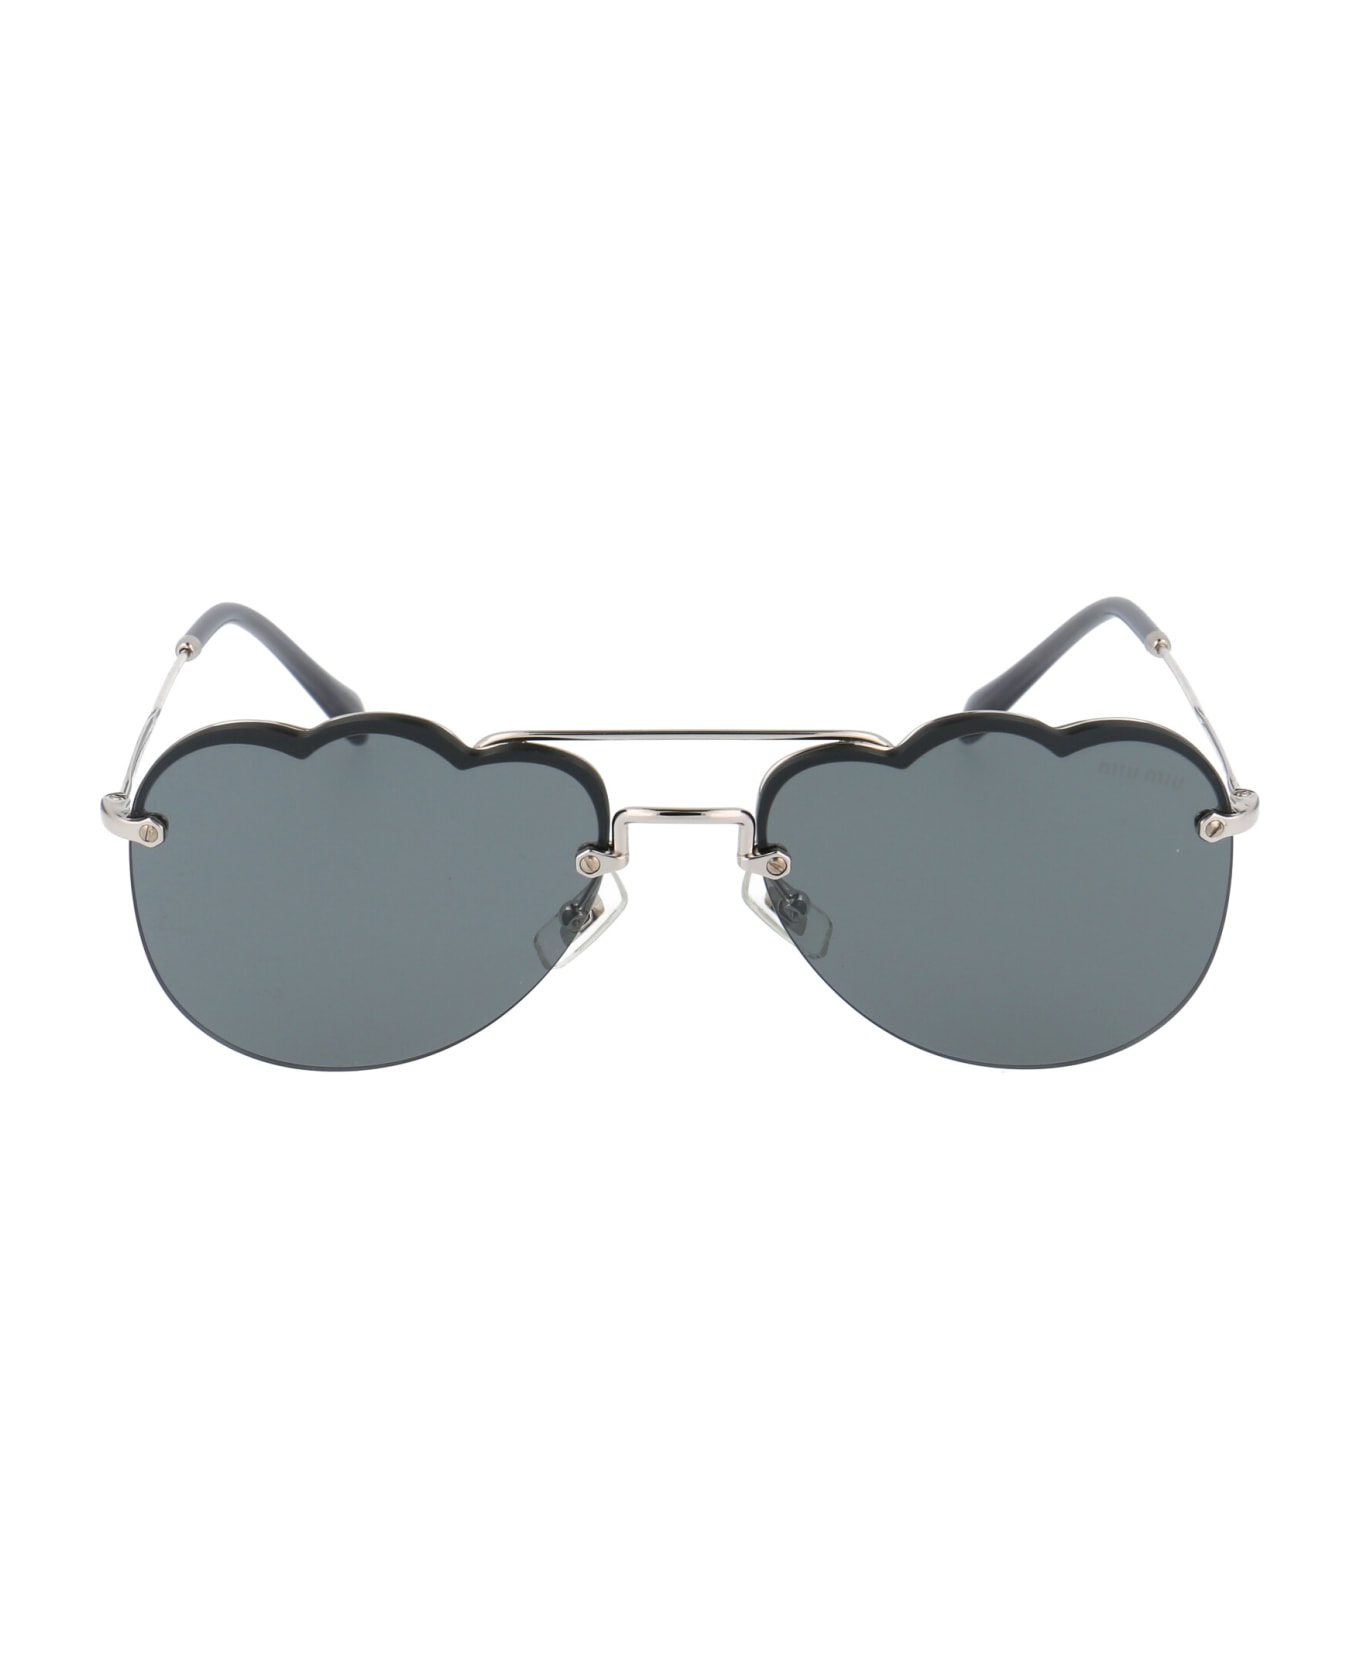 Miu Miu Eyewear 0mu 56us Sunglasses - 1BC175 SILVER サングラス